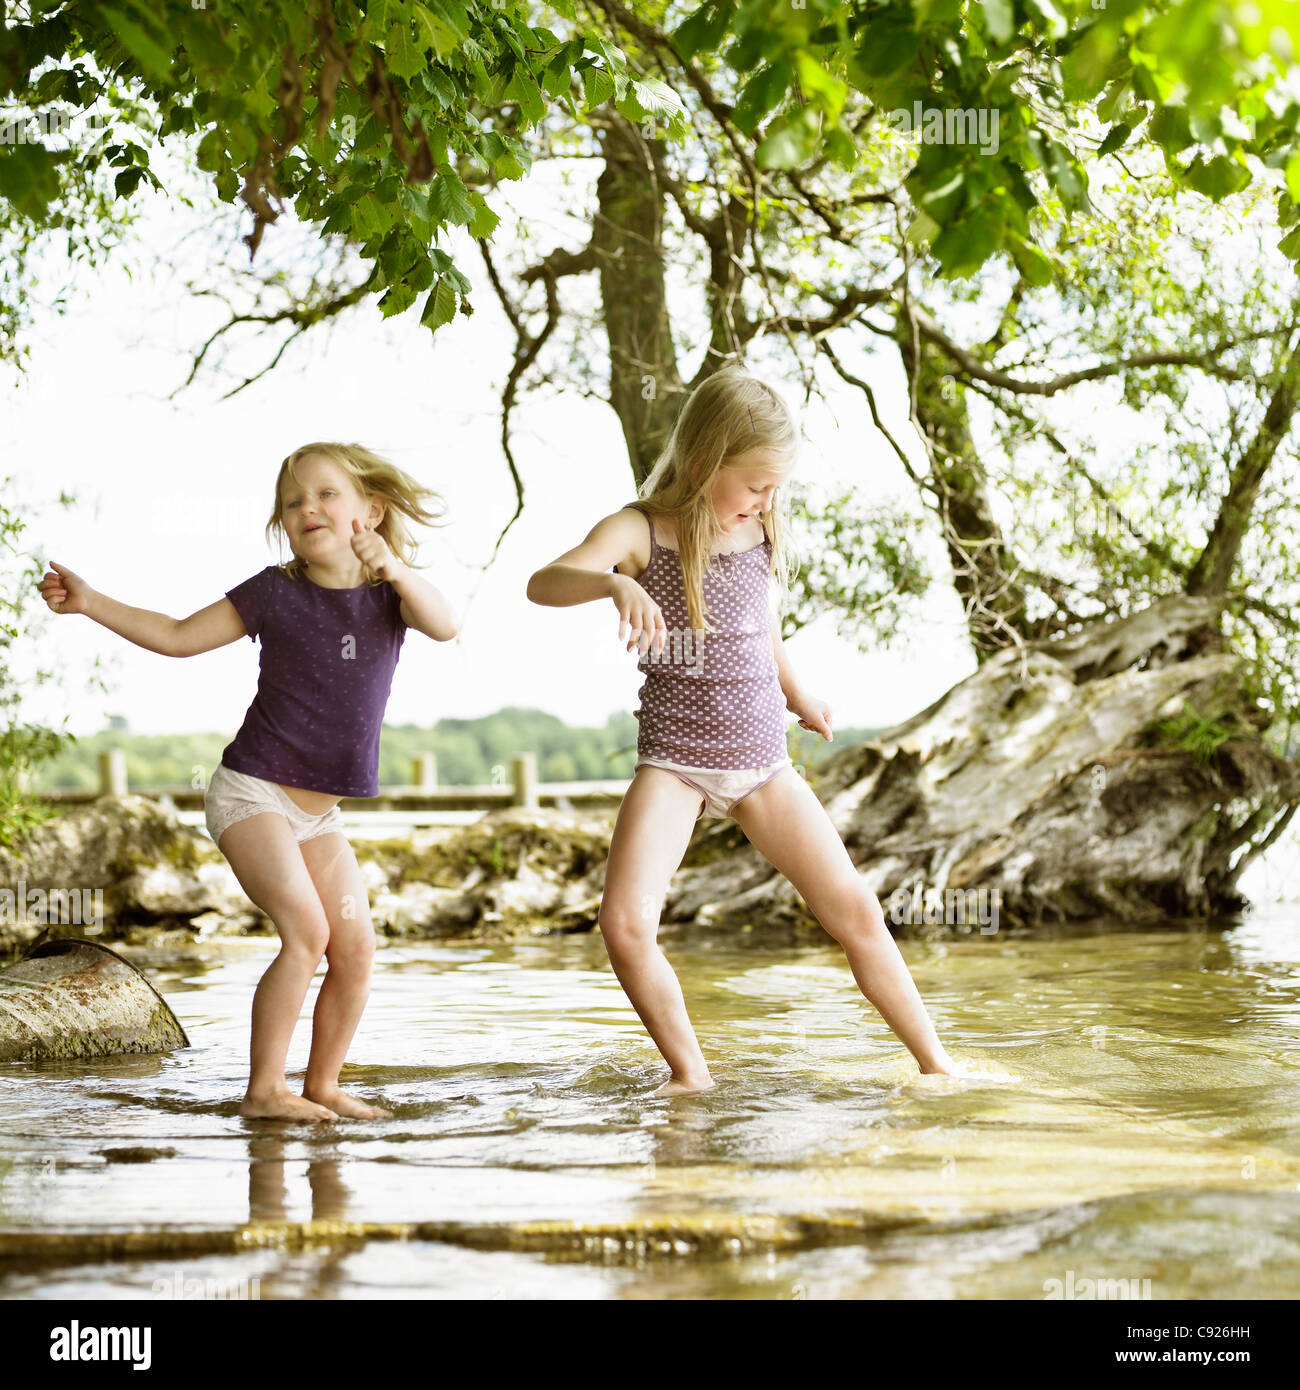 Lächelnde Mädchen spielen im See Stockfotografie - Alamy.